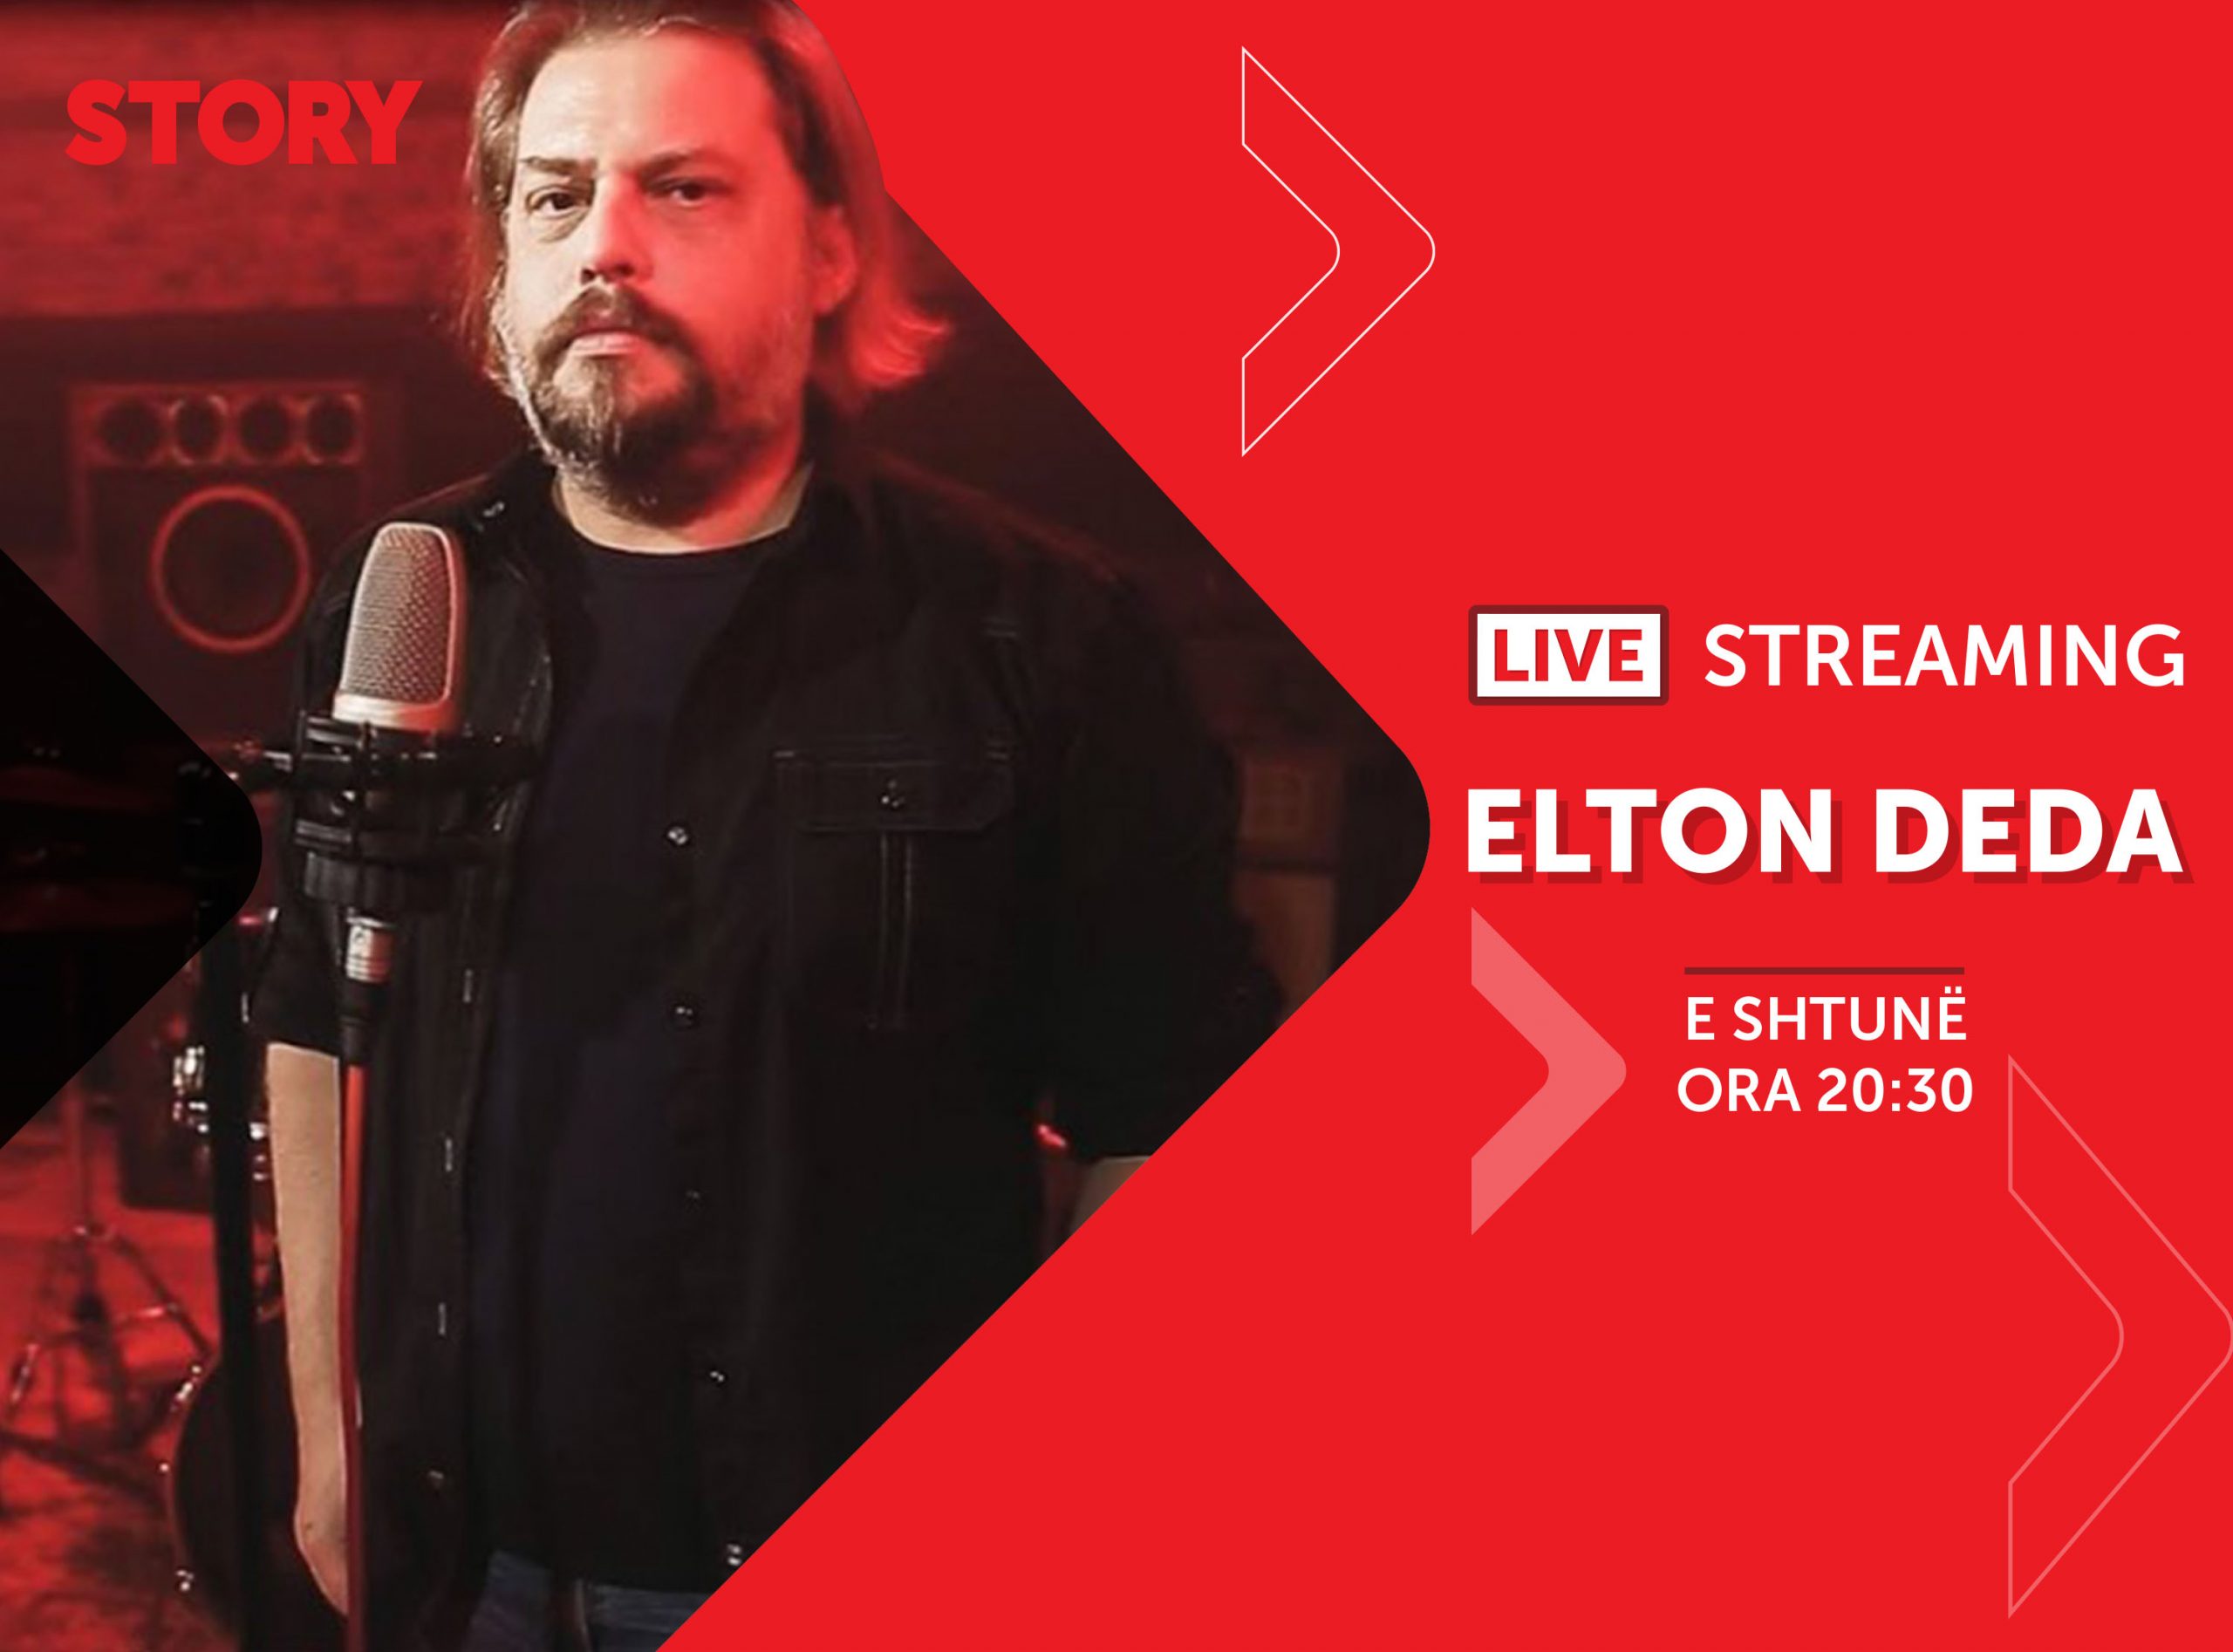 Elton Deda në një rrëfim ekskluziv live për STORY